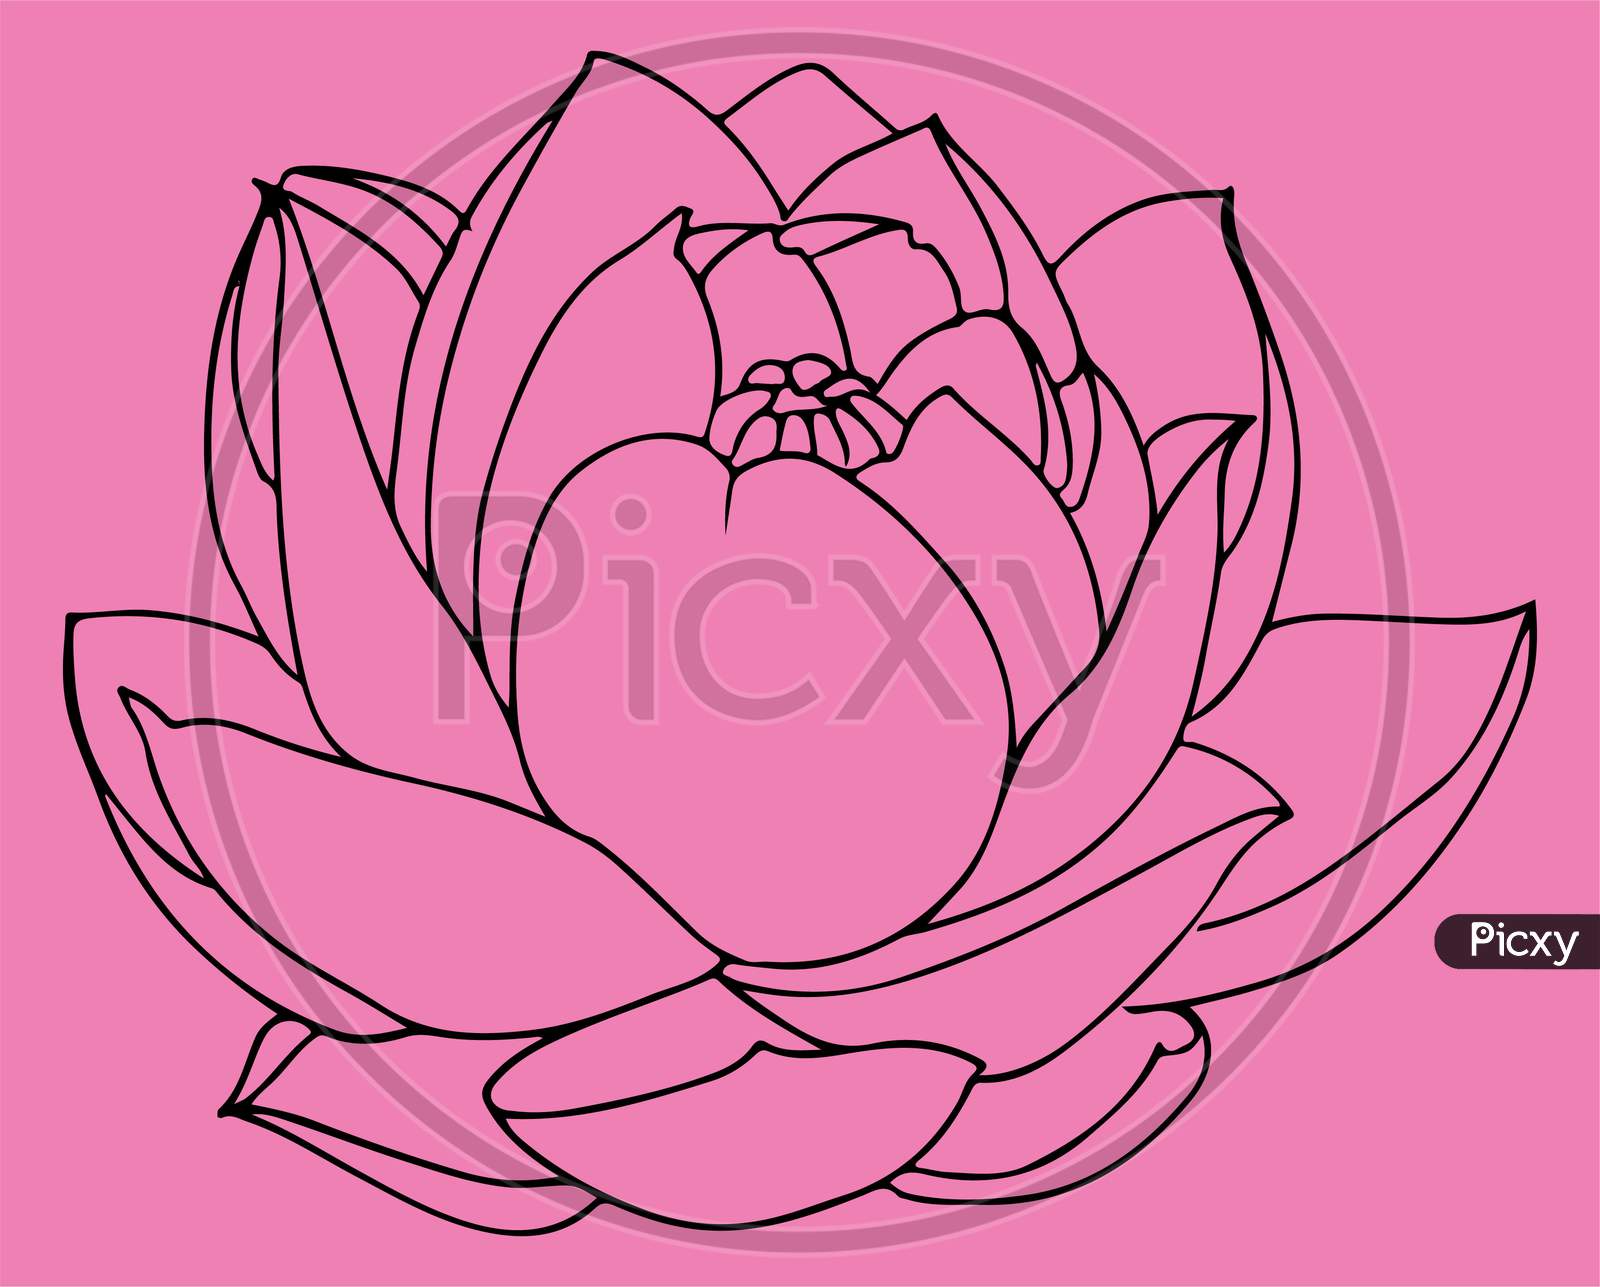 Lotus flower bloom. Stock Vector by ©GennadiiKorchuganov 189969150-saigonsouth.com.vn